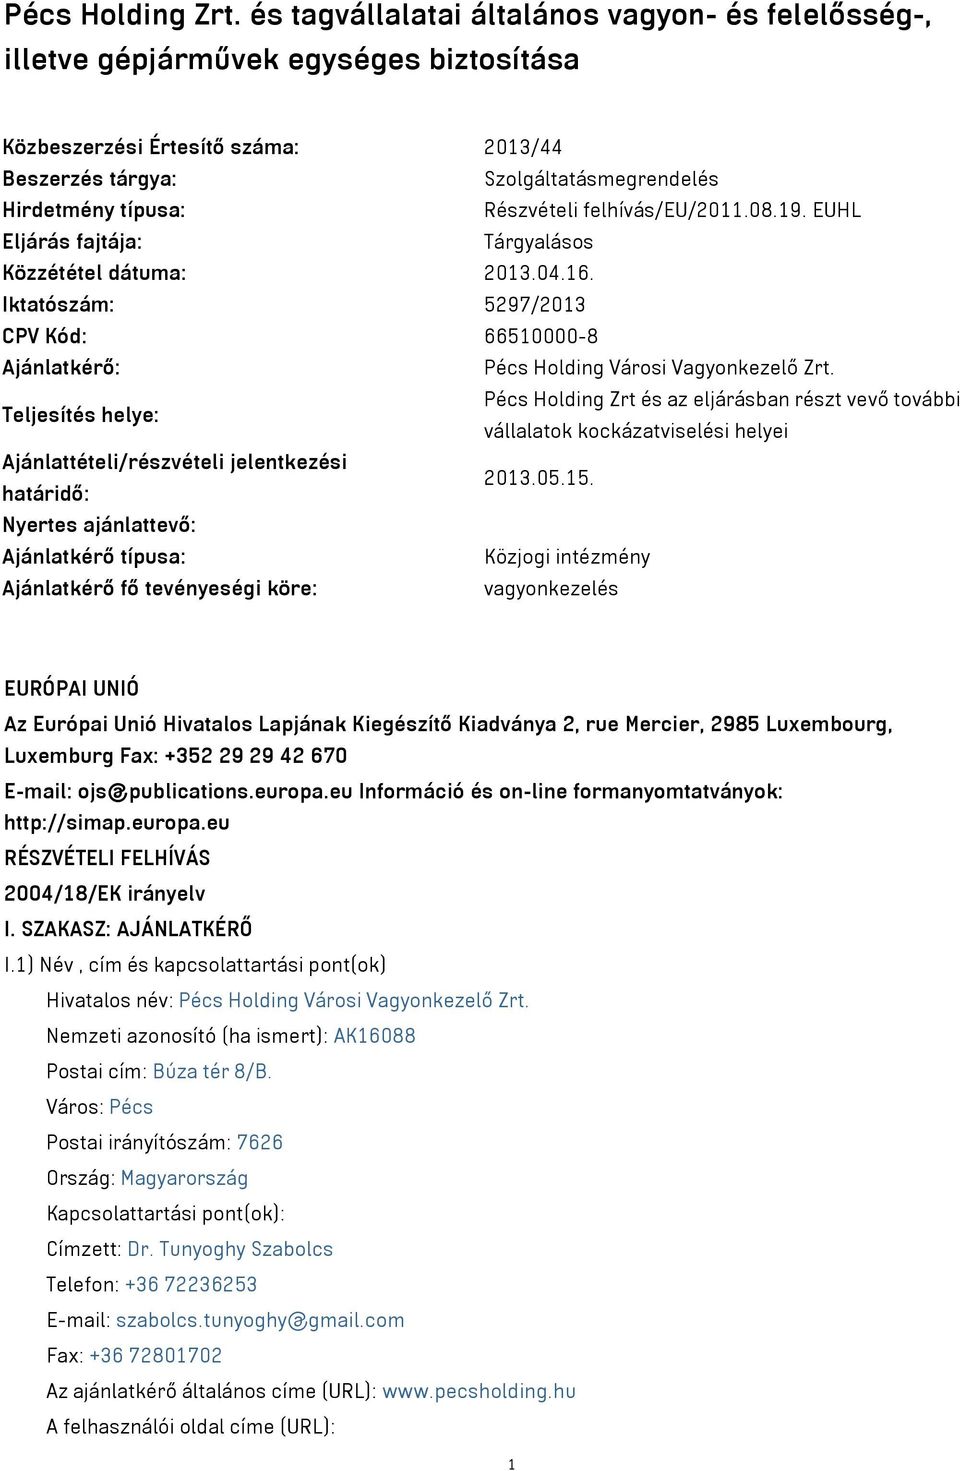 felhívás/eu/2011.08.19. EUHL Eljárás fajtája: Tárgyalásos Közzététel dátuma: 2013.04.16. Iktatószám: 5297/2013 CPV Kód: 66510000-8 Ajánlatkérő: Pécs Holding Városi Vagyonkezelő Zrt.